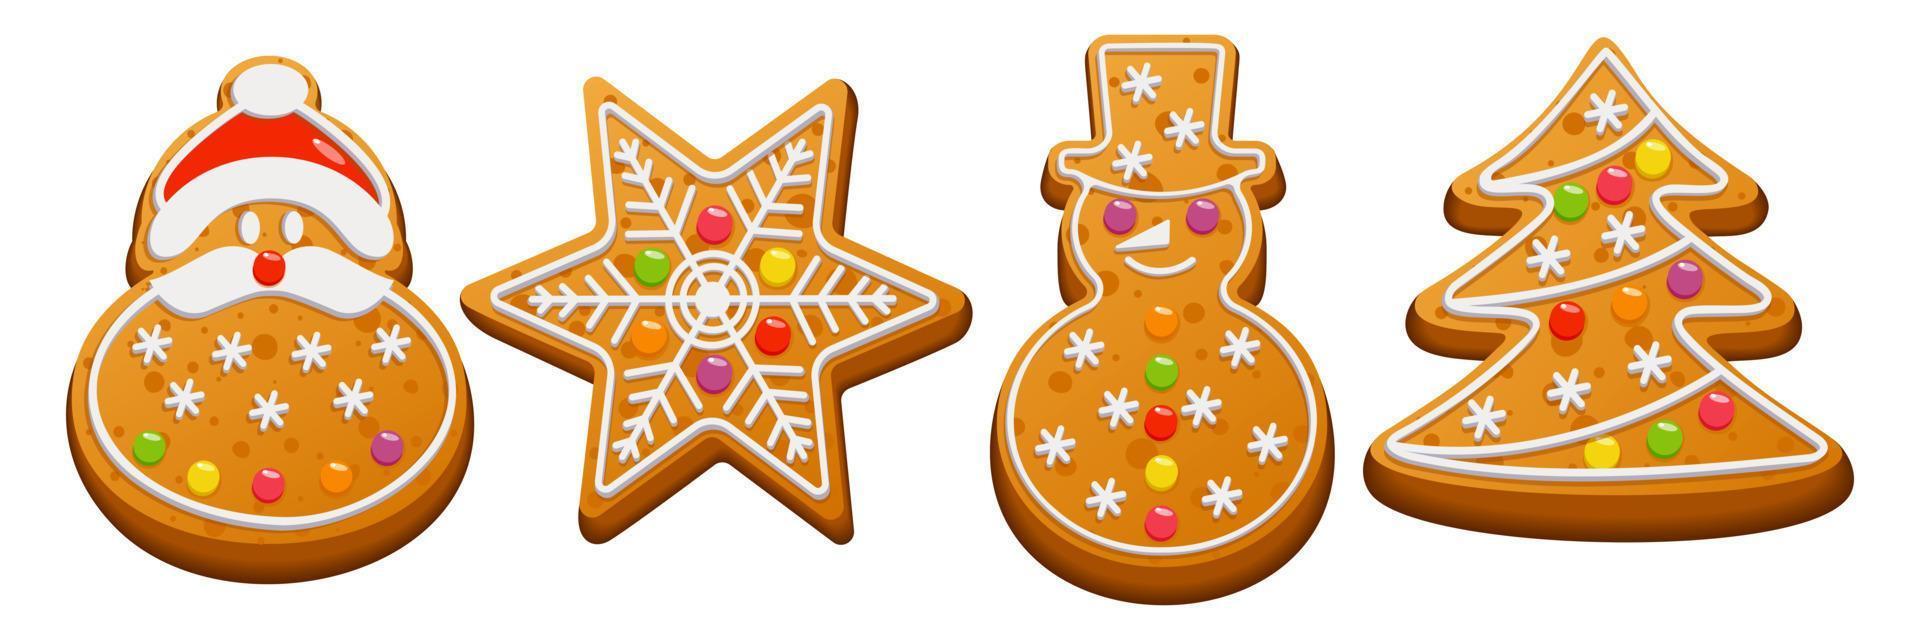 Kerstmis peperkoek set. zoet eigengemaakt winter koekjes. peperkoek koekjes met suiker suikerglazuur en marmelade Aan een wit achtergrond. vector illustratie.